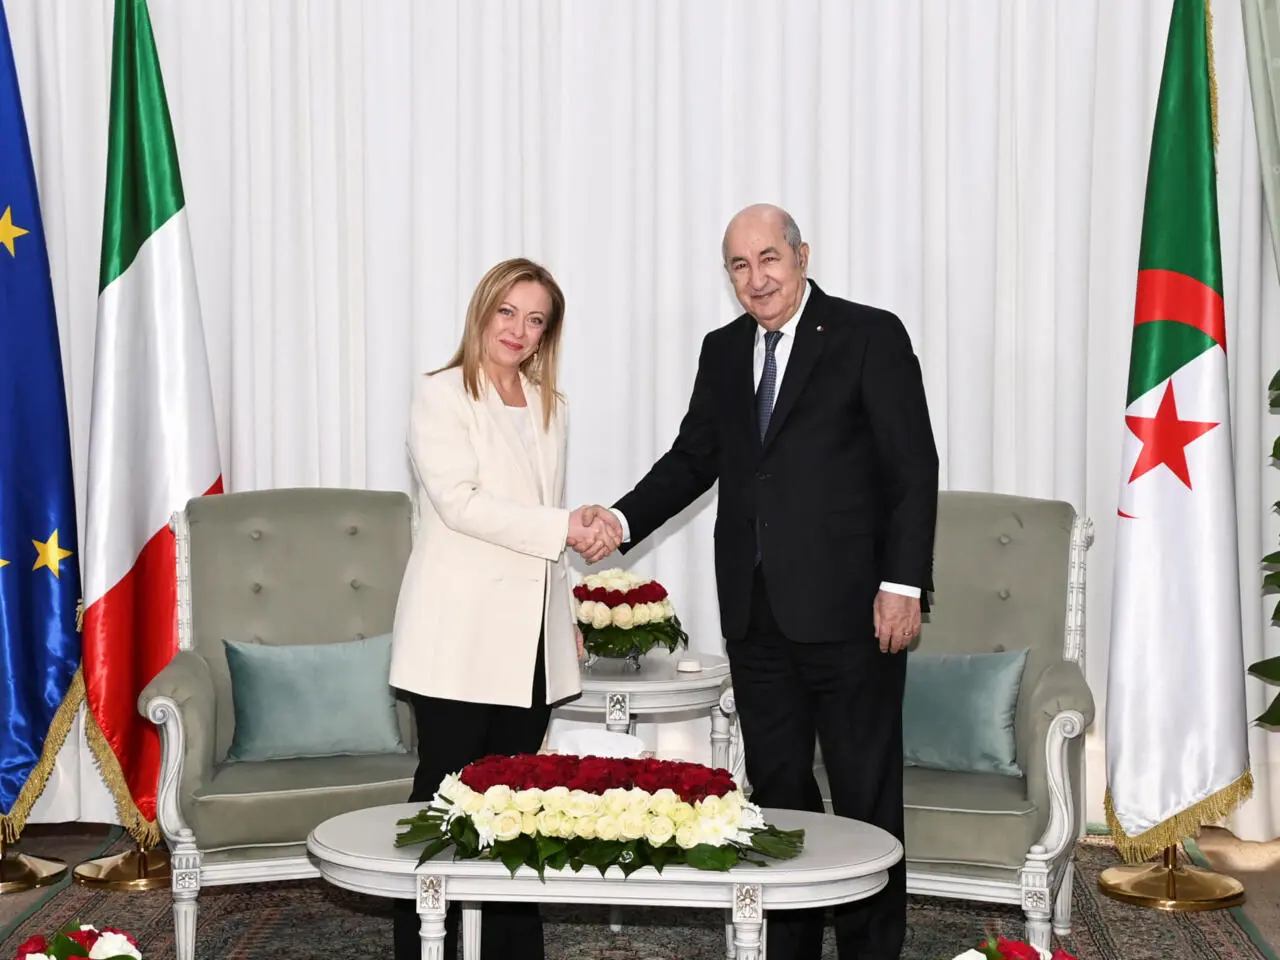 الجزائر تعلن عن "مشروع ضخم" مع إيطاليا لإنتاج الحبوب